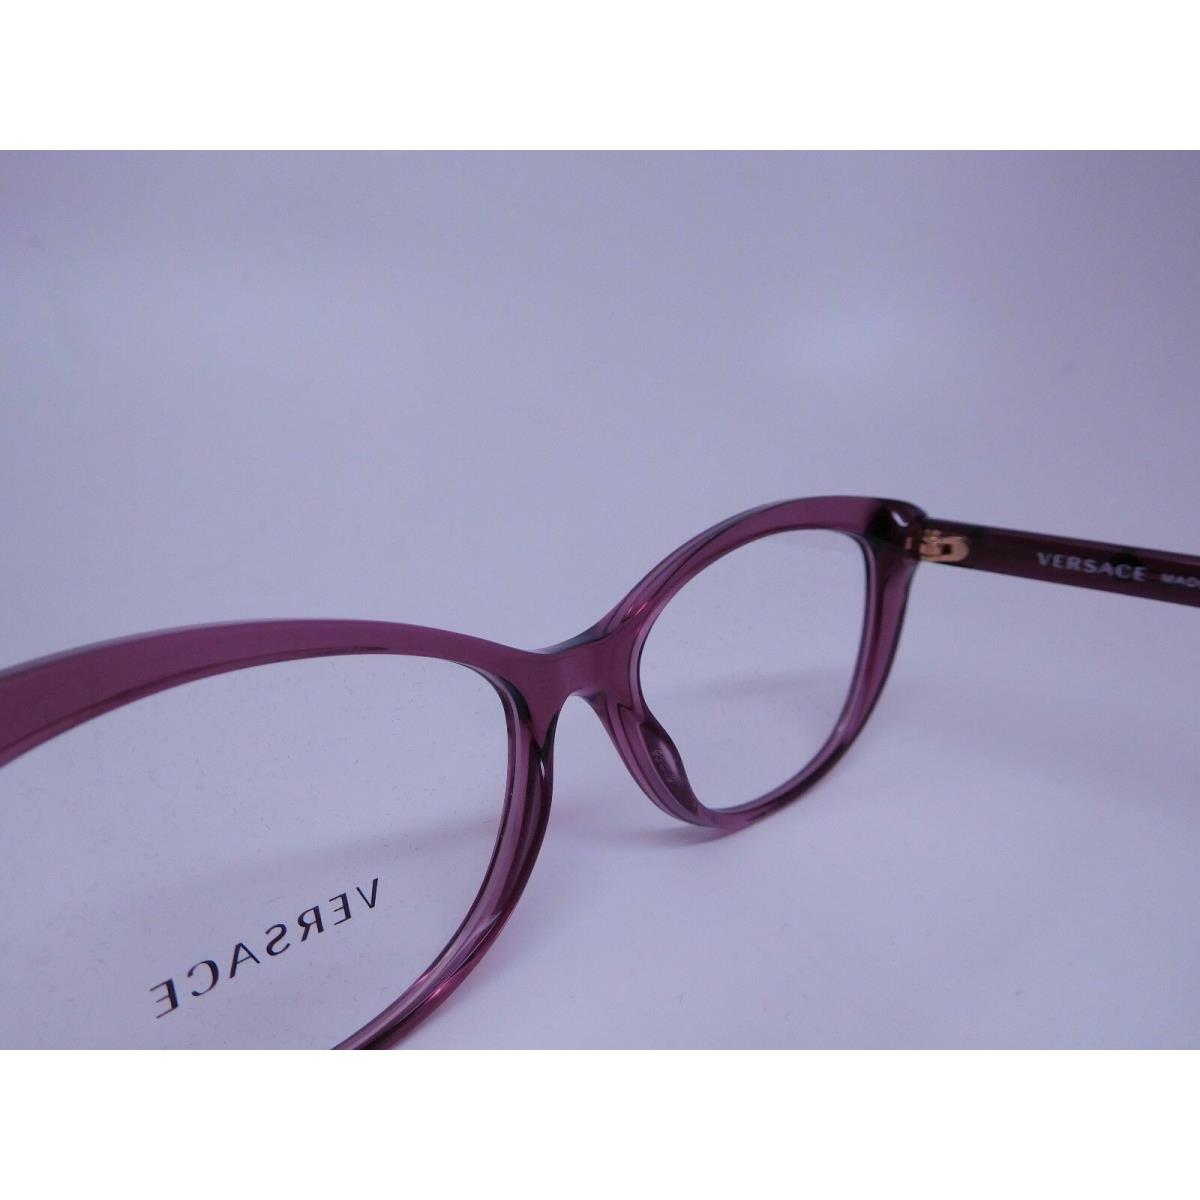 Versace eyeglasses  - Purple Frame 5